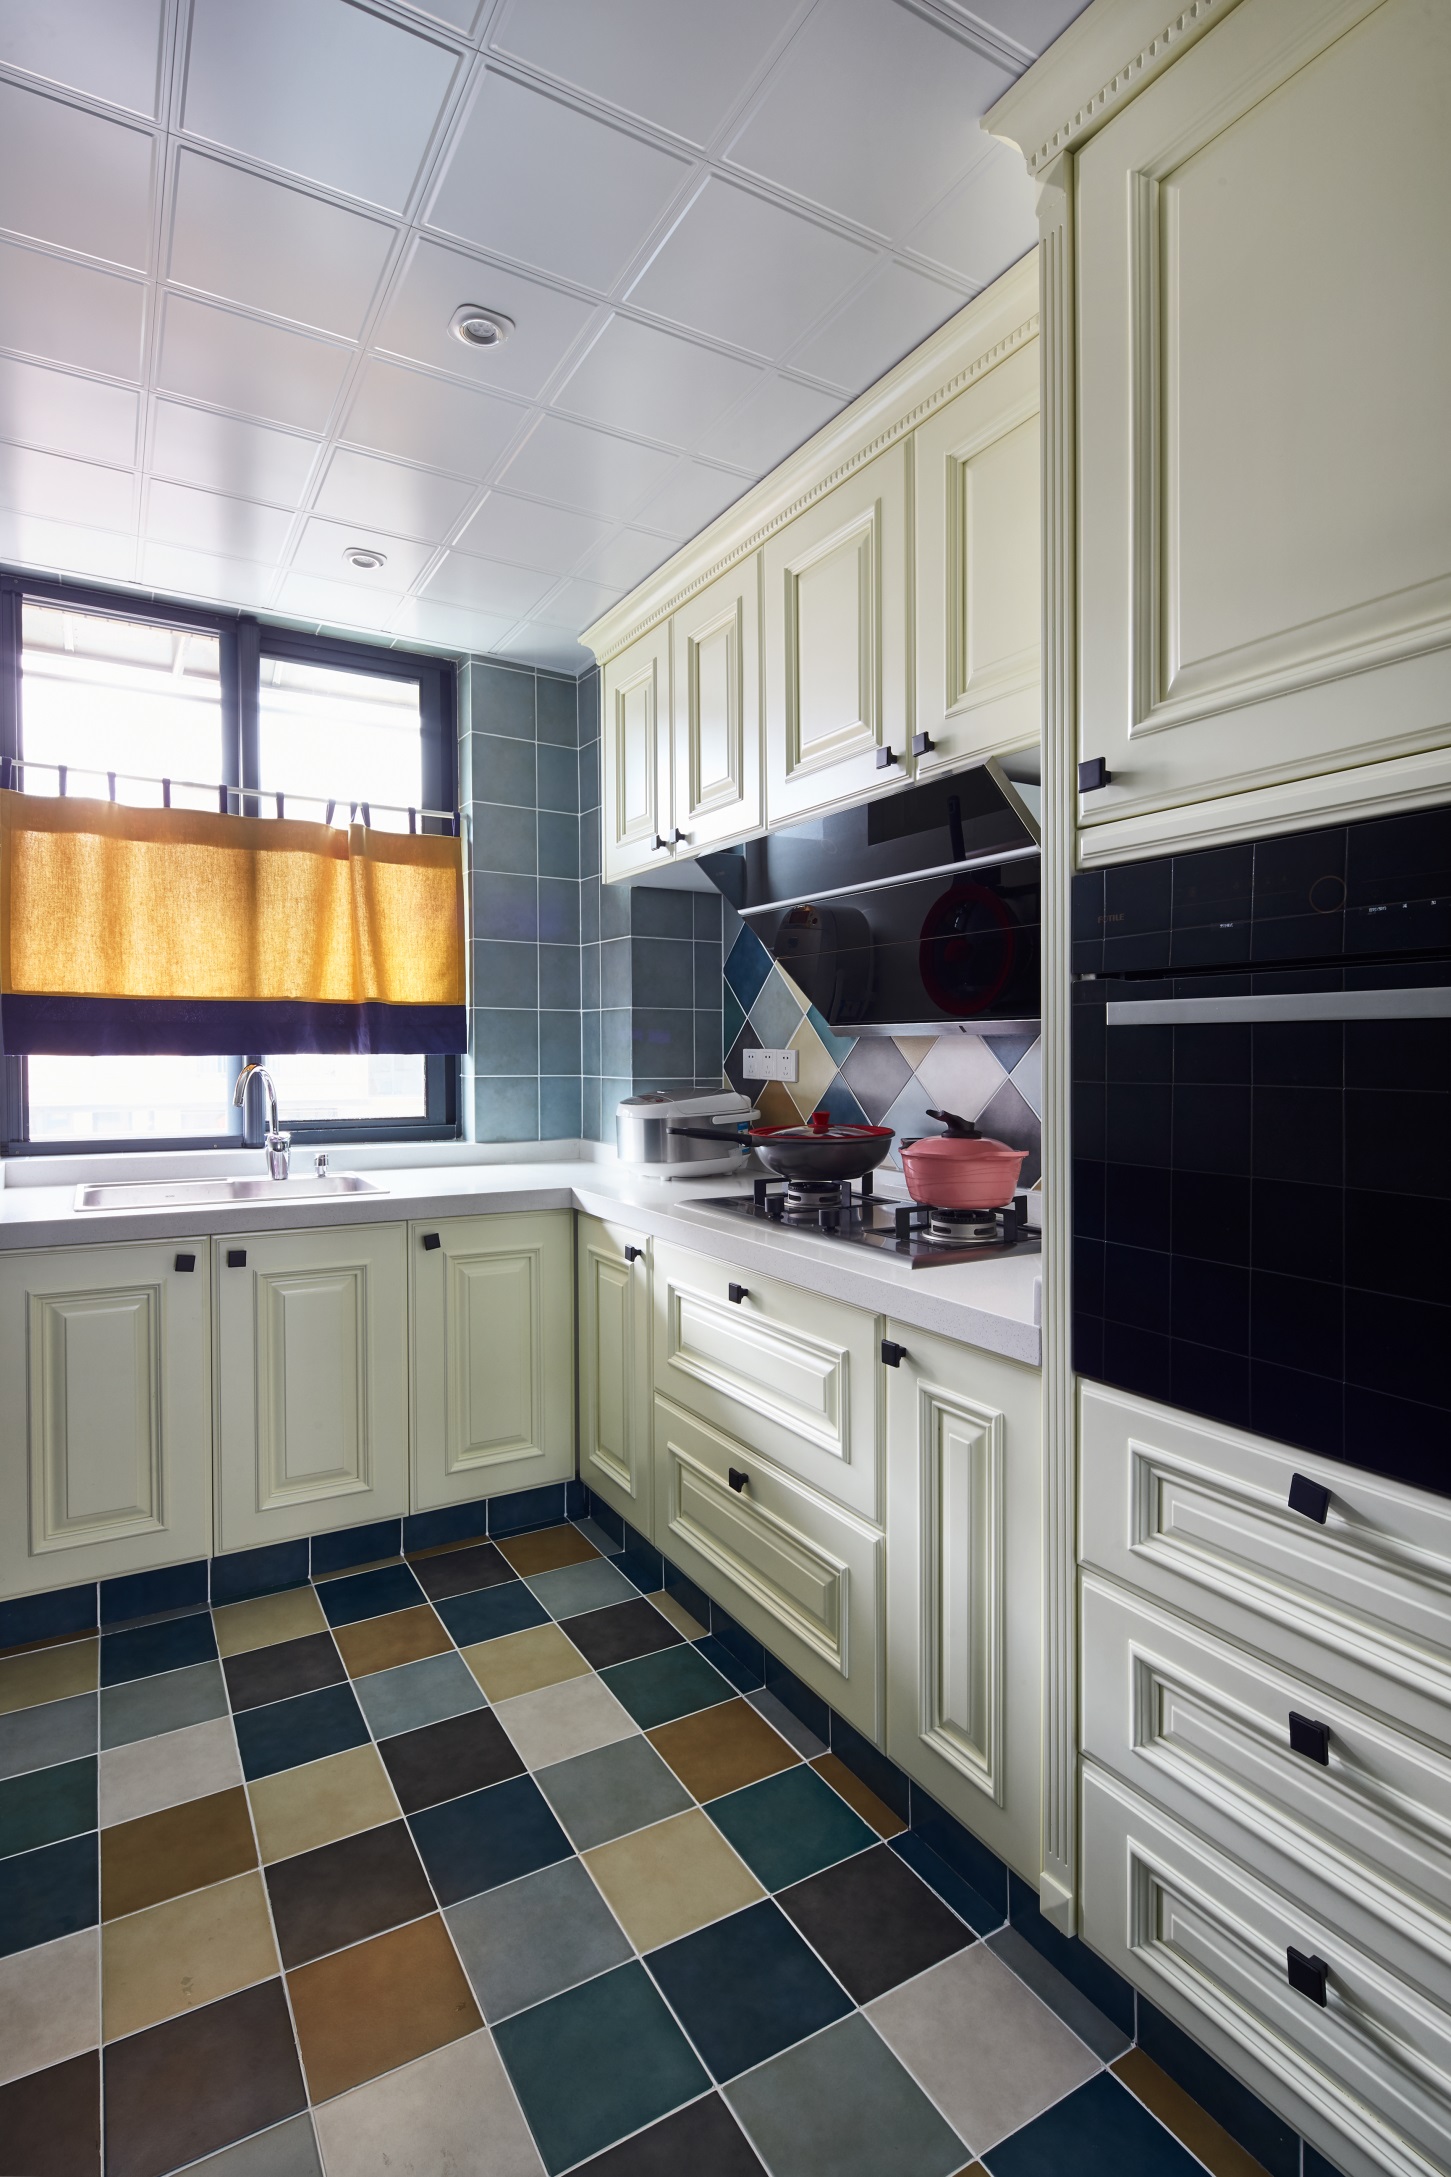 厨房线条利落，动线设计完整，彩色文化砖提升空间生活气息，使厨房更具层次。